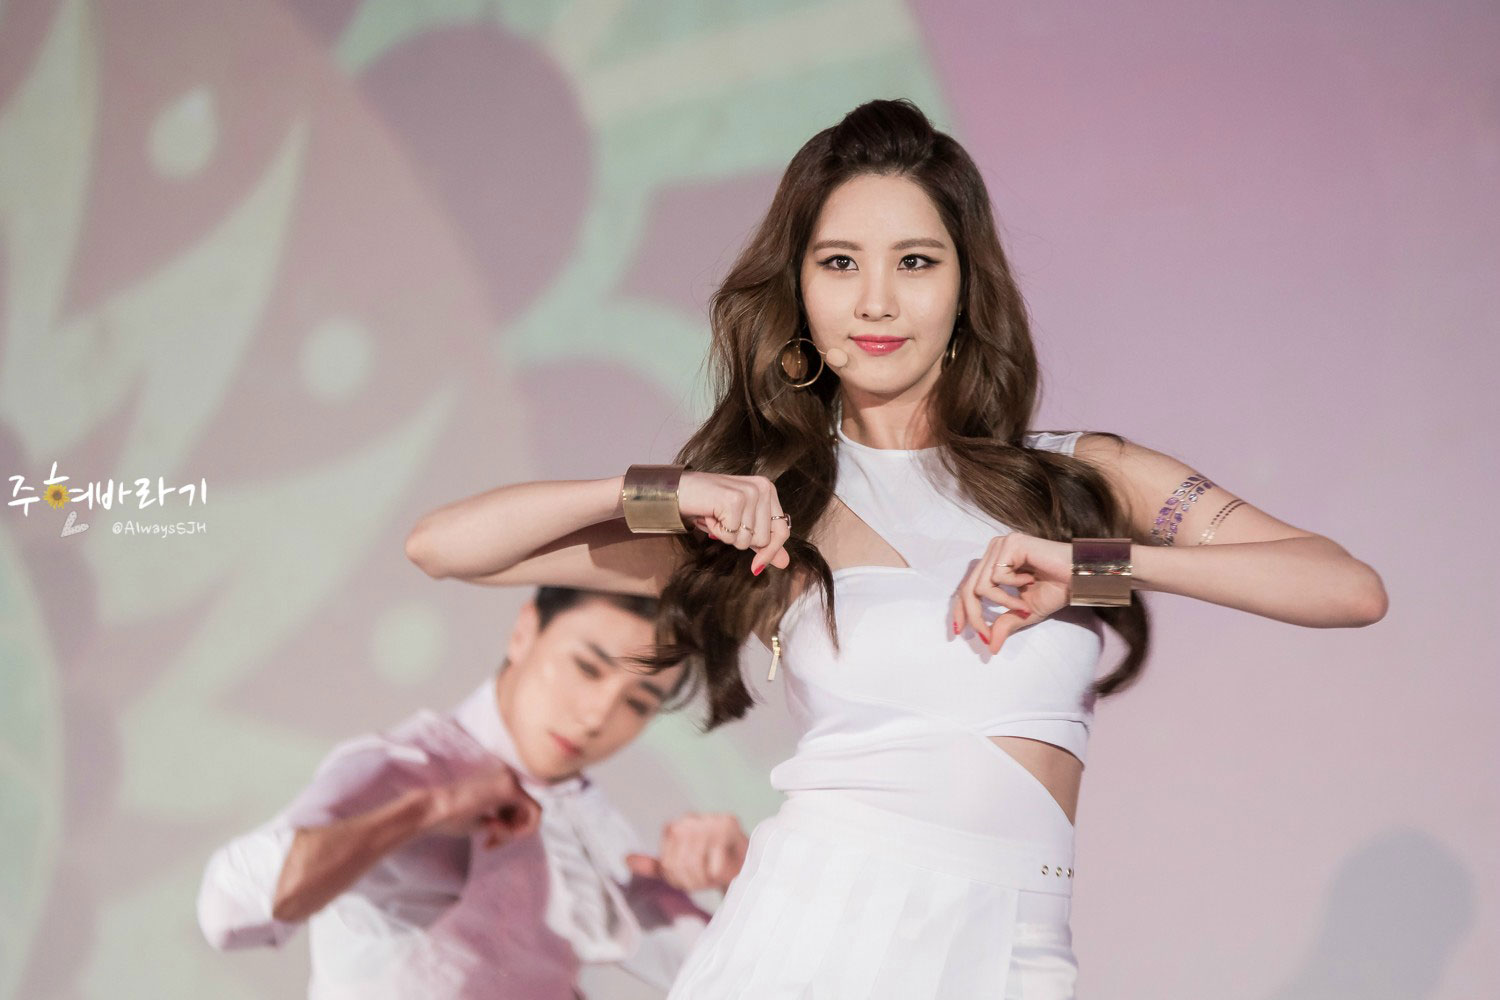 Girls&#8217; Generation-TTS Style Icon Awards 2014